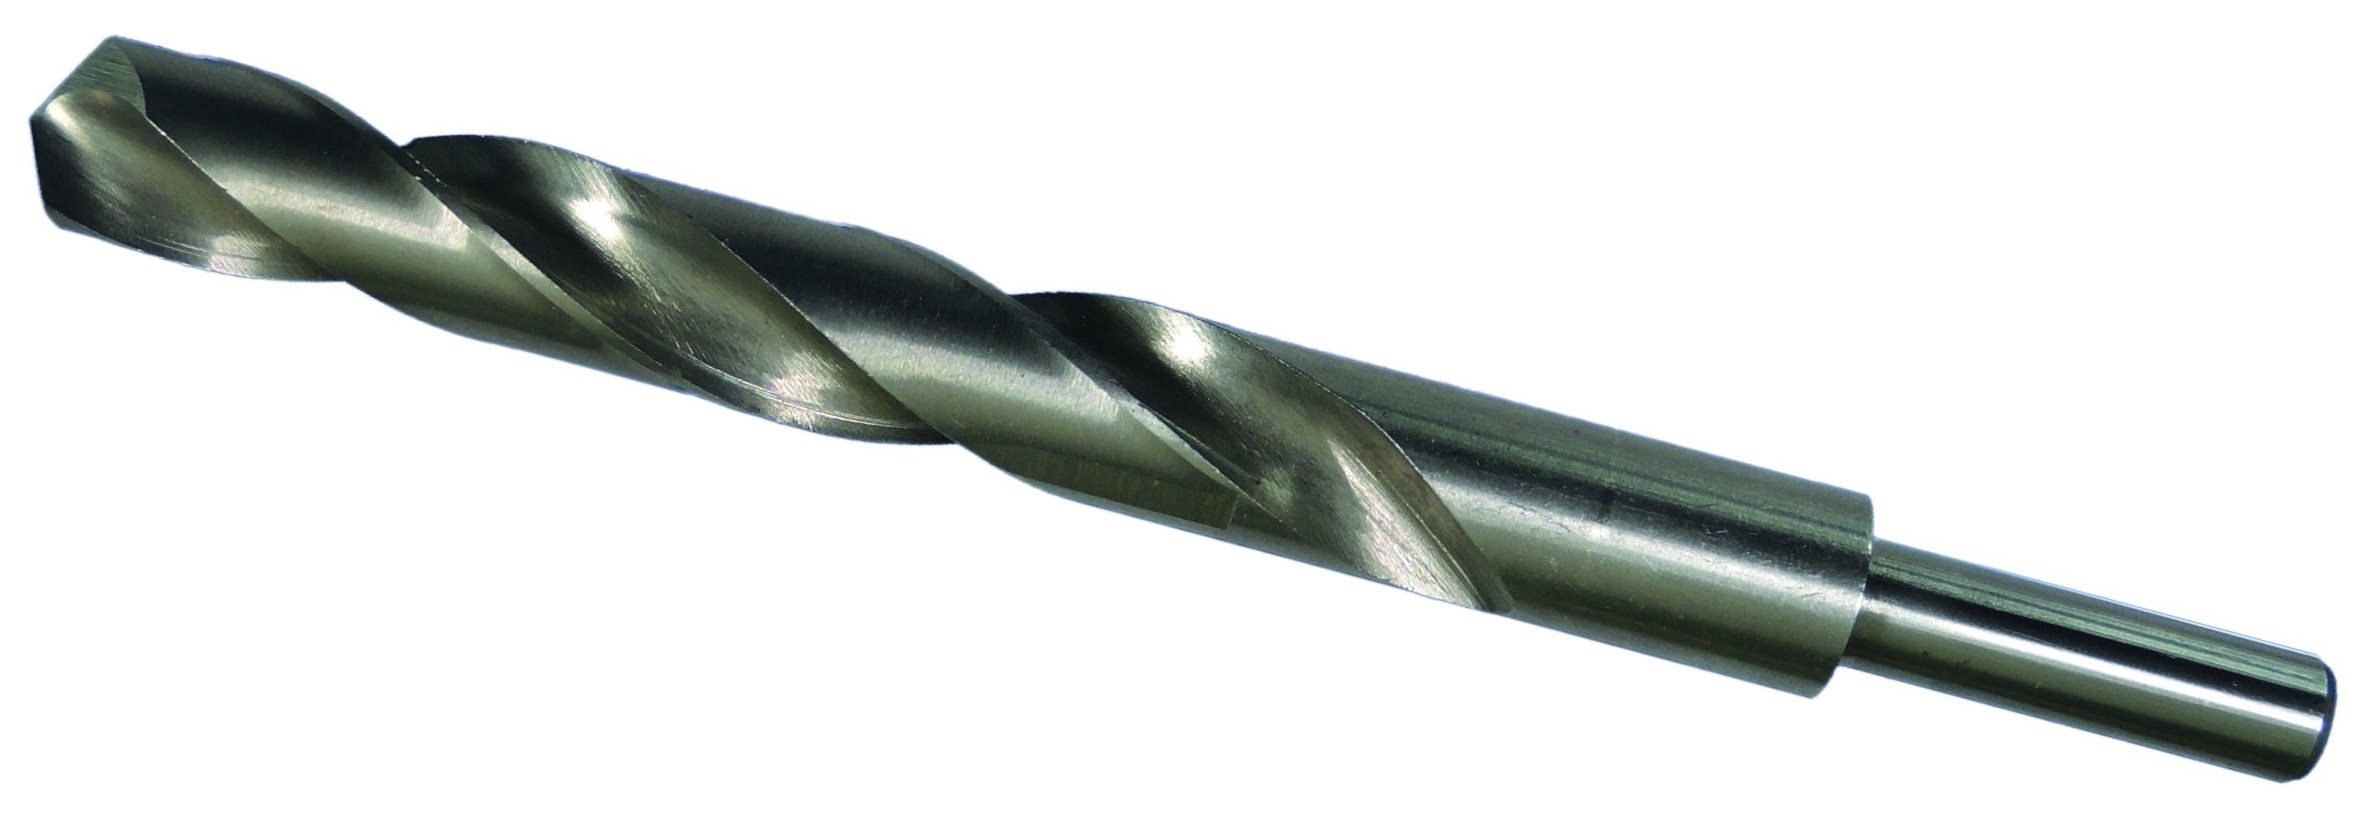 HHS-G Spiralbohrer Bohrer Set Satz Metallbohrer 13.5-20mm mit reduziertem Schaft 